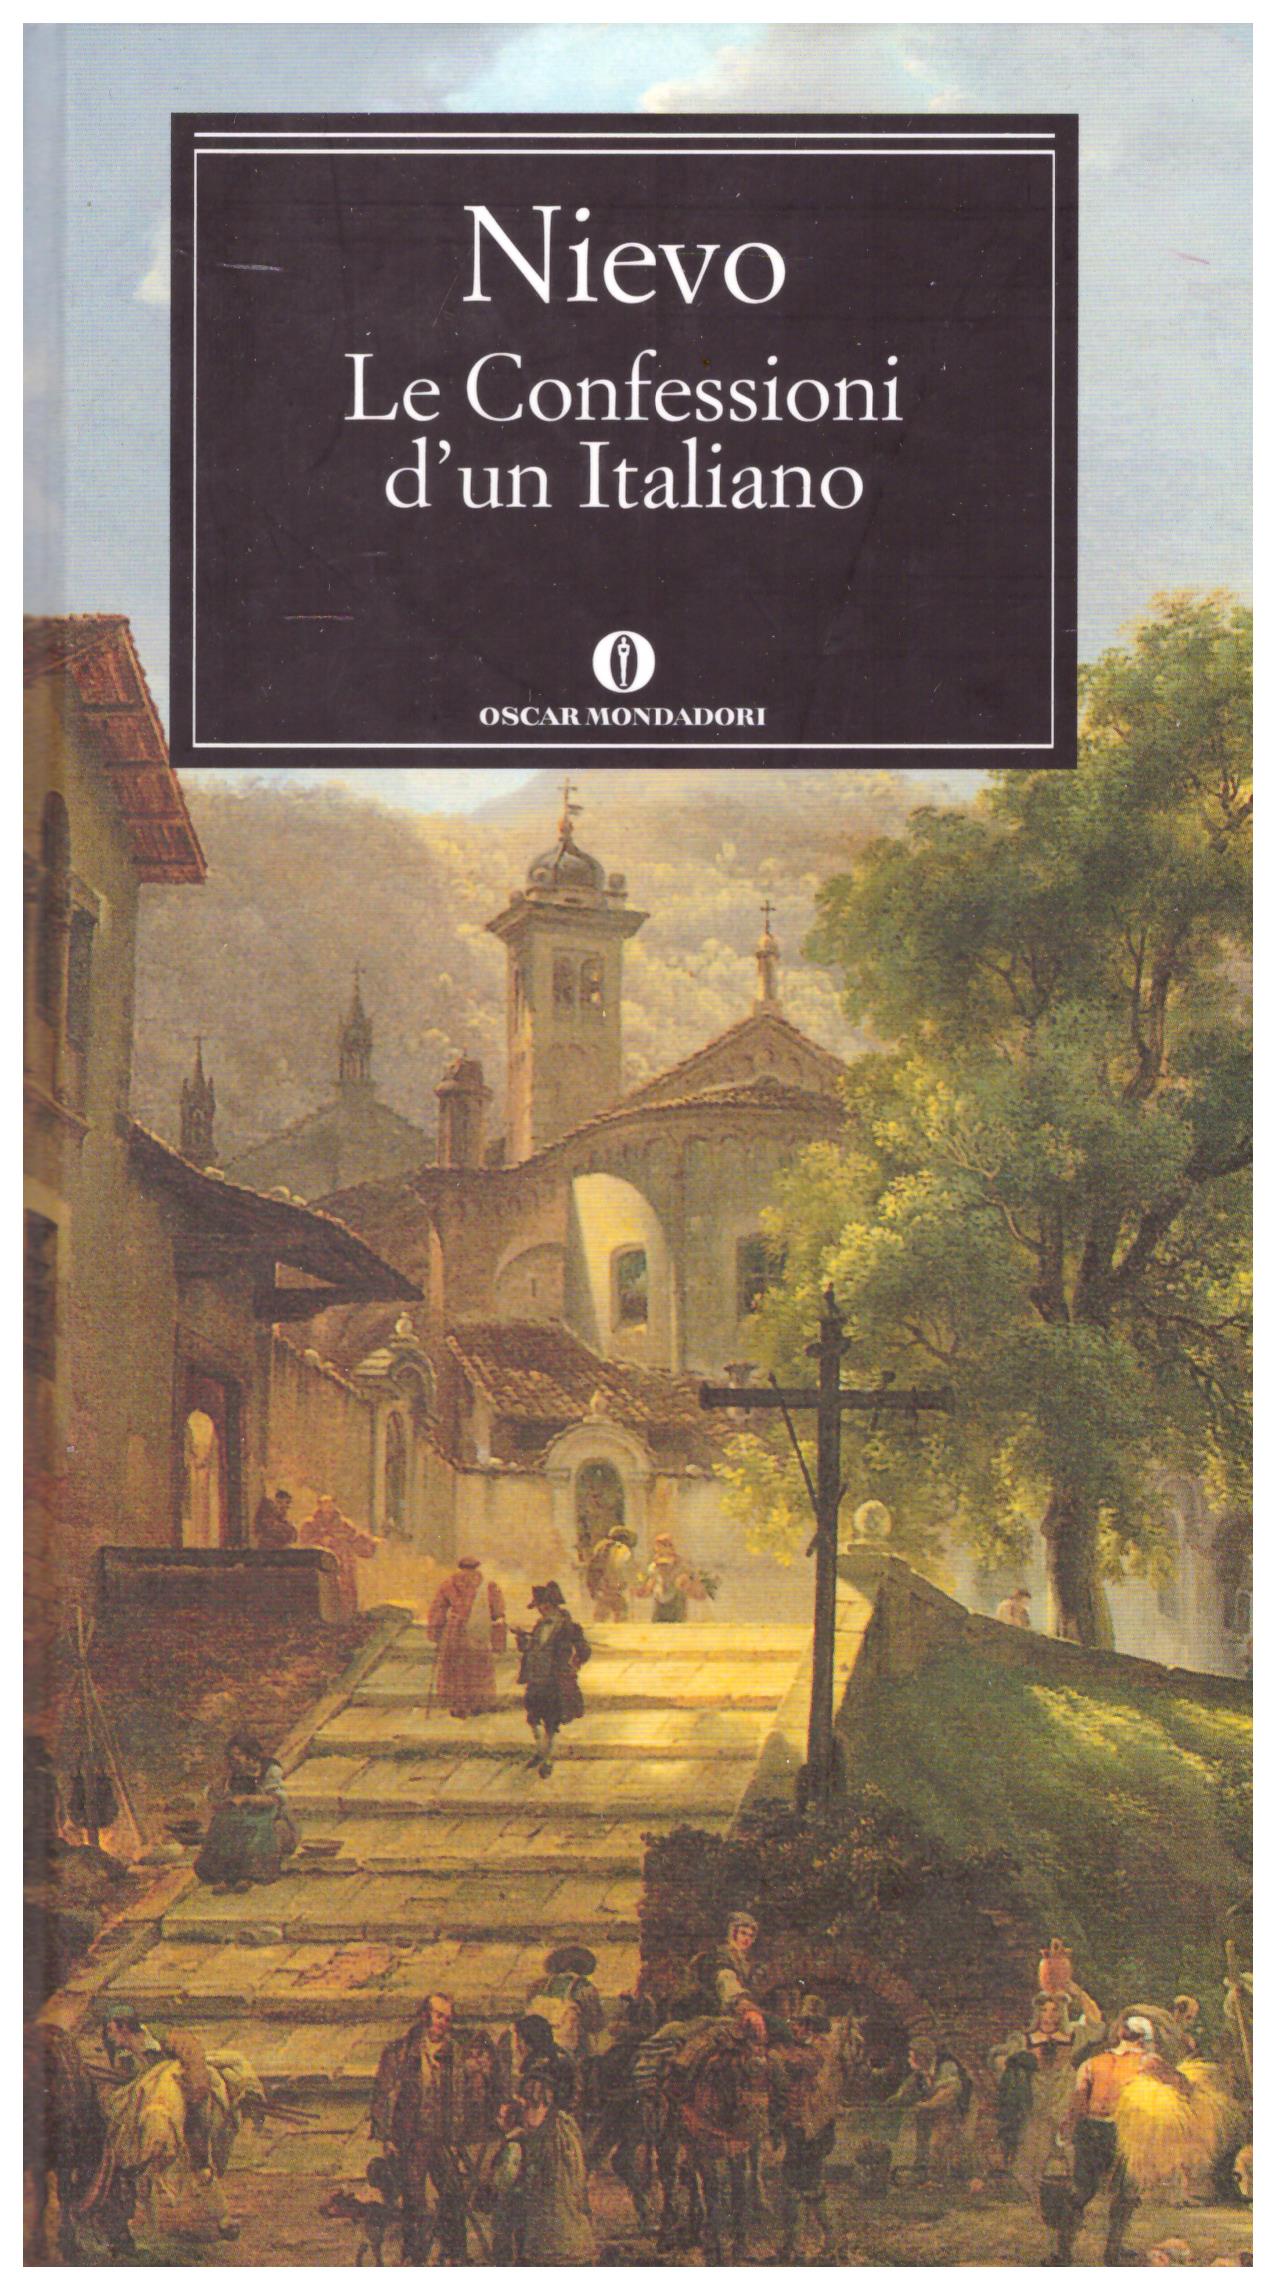 Titolo: Le confessioni di un italiano Autore: Ippolito Nievo Editore: oscar mondadori, 2010